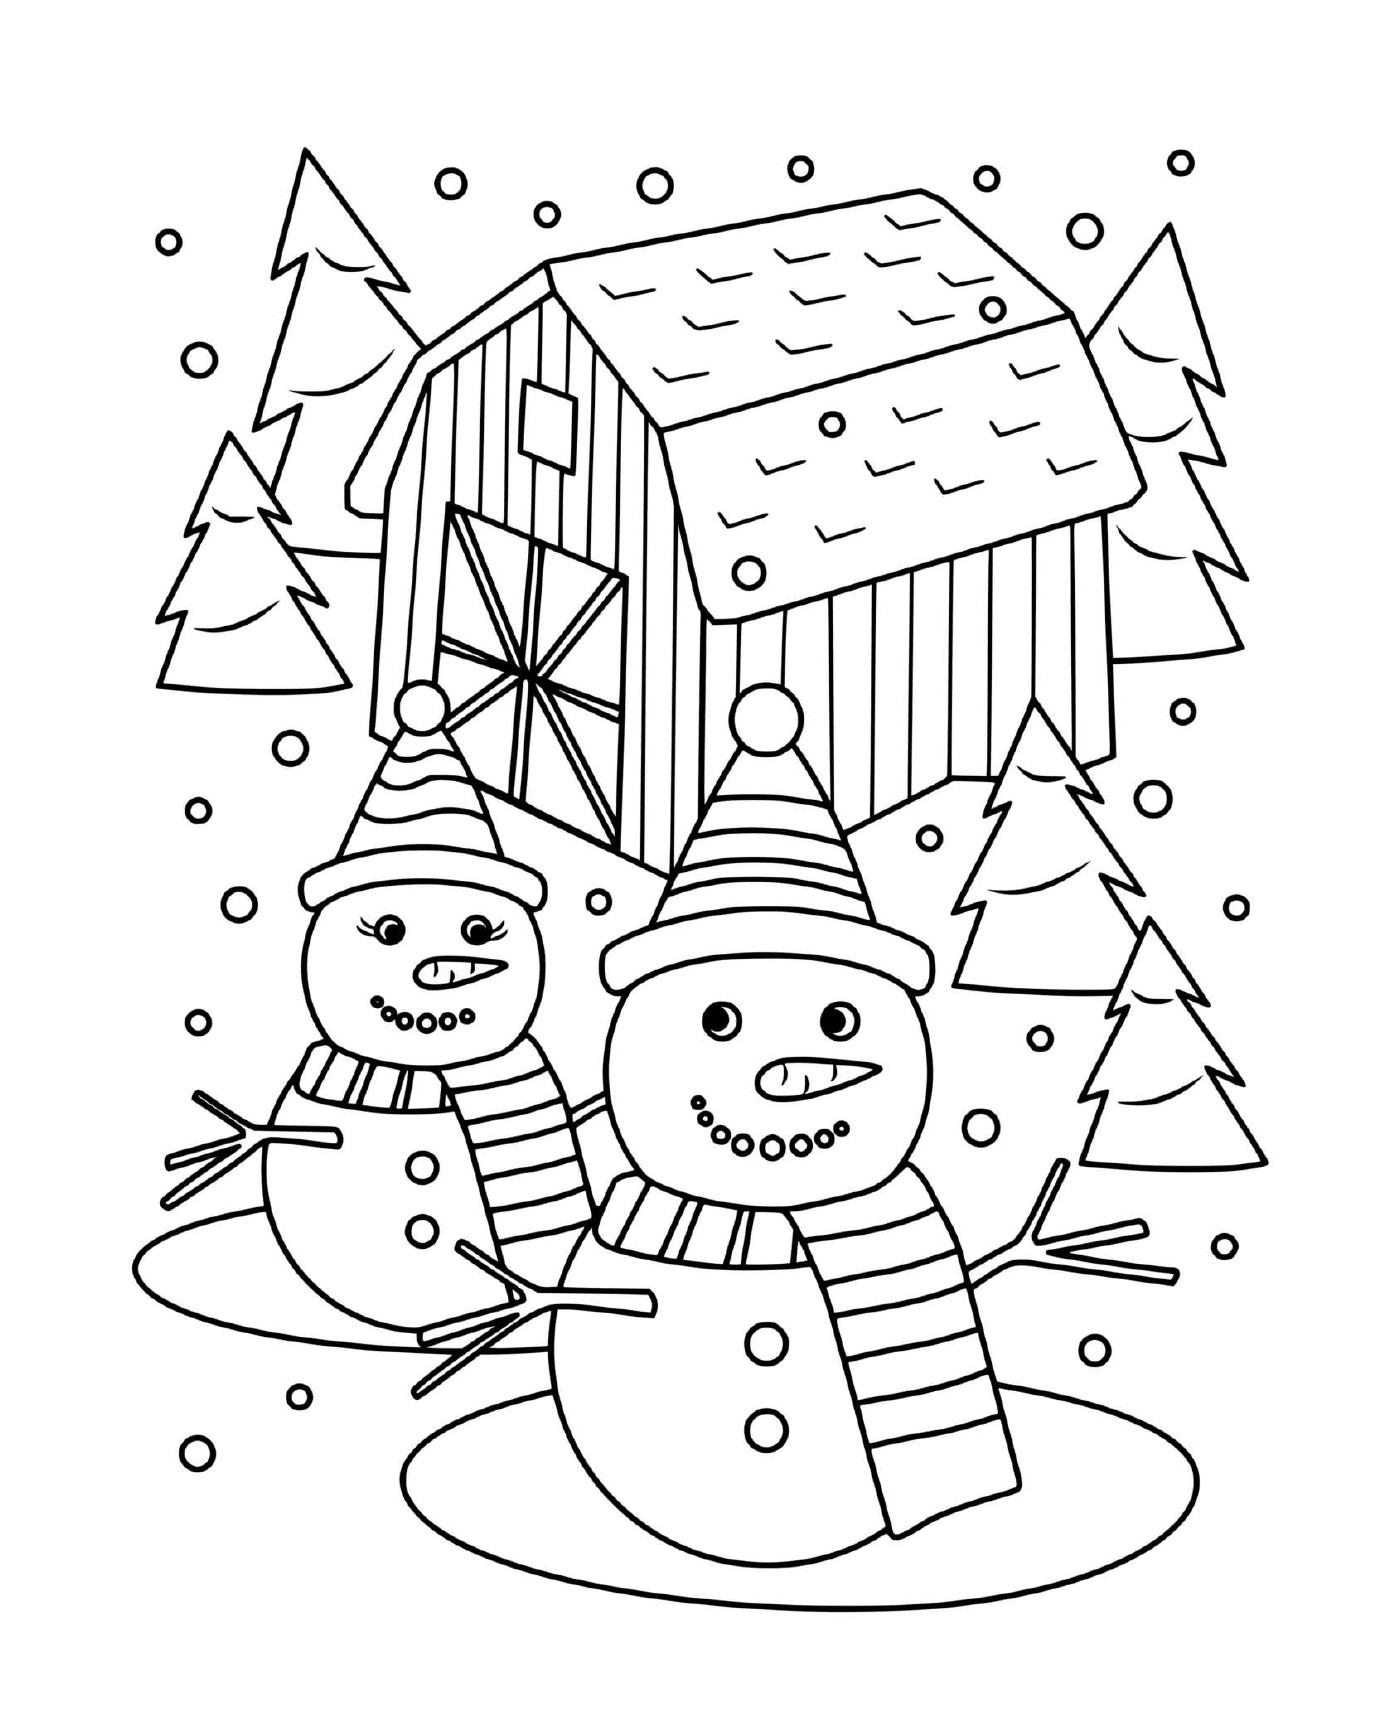  Um boneco de neve e uma senhora de neve cercada por abetos 